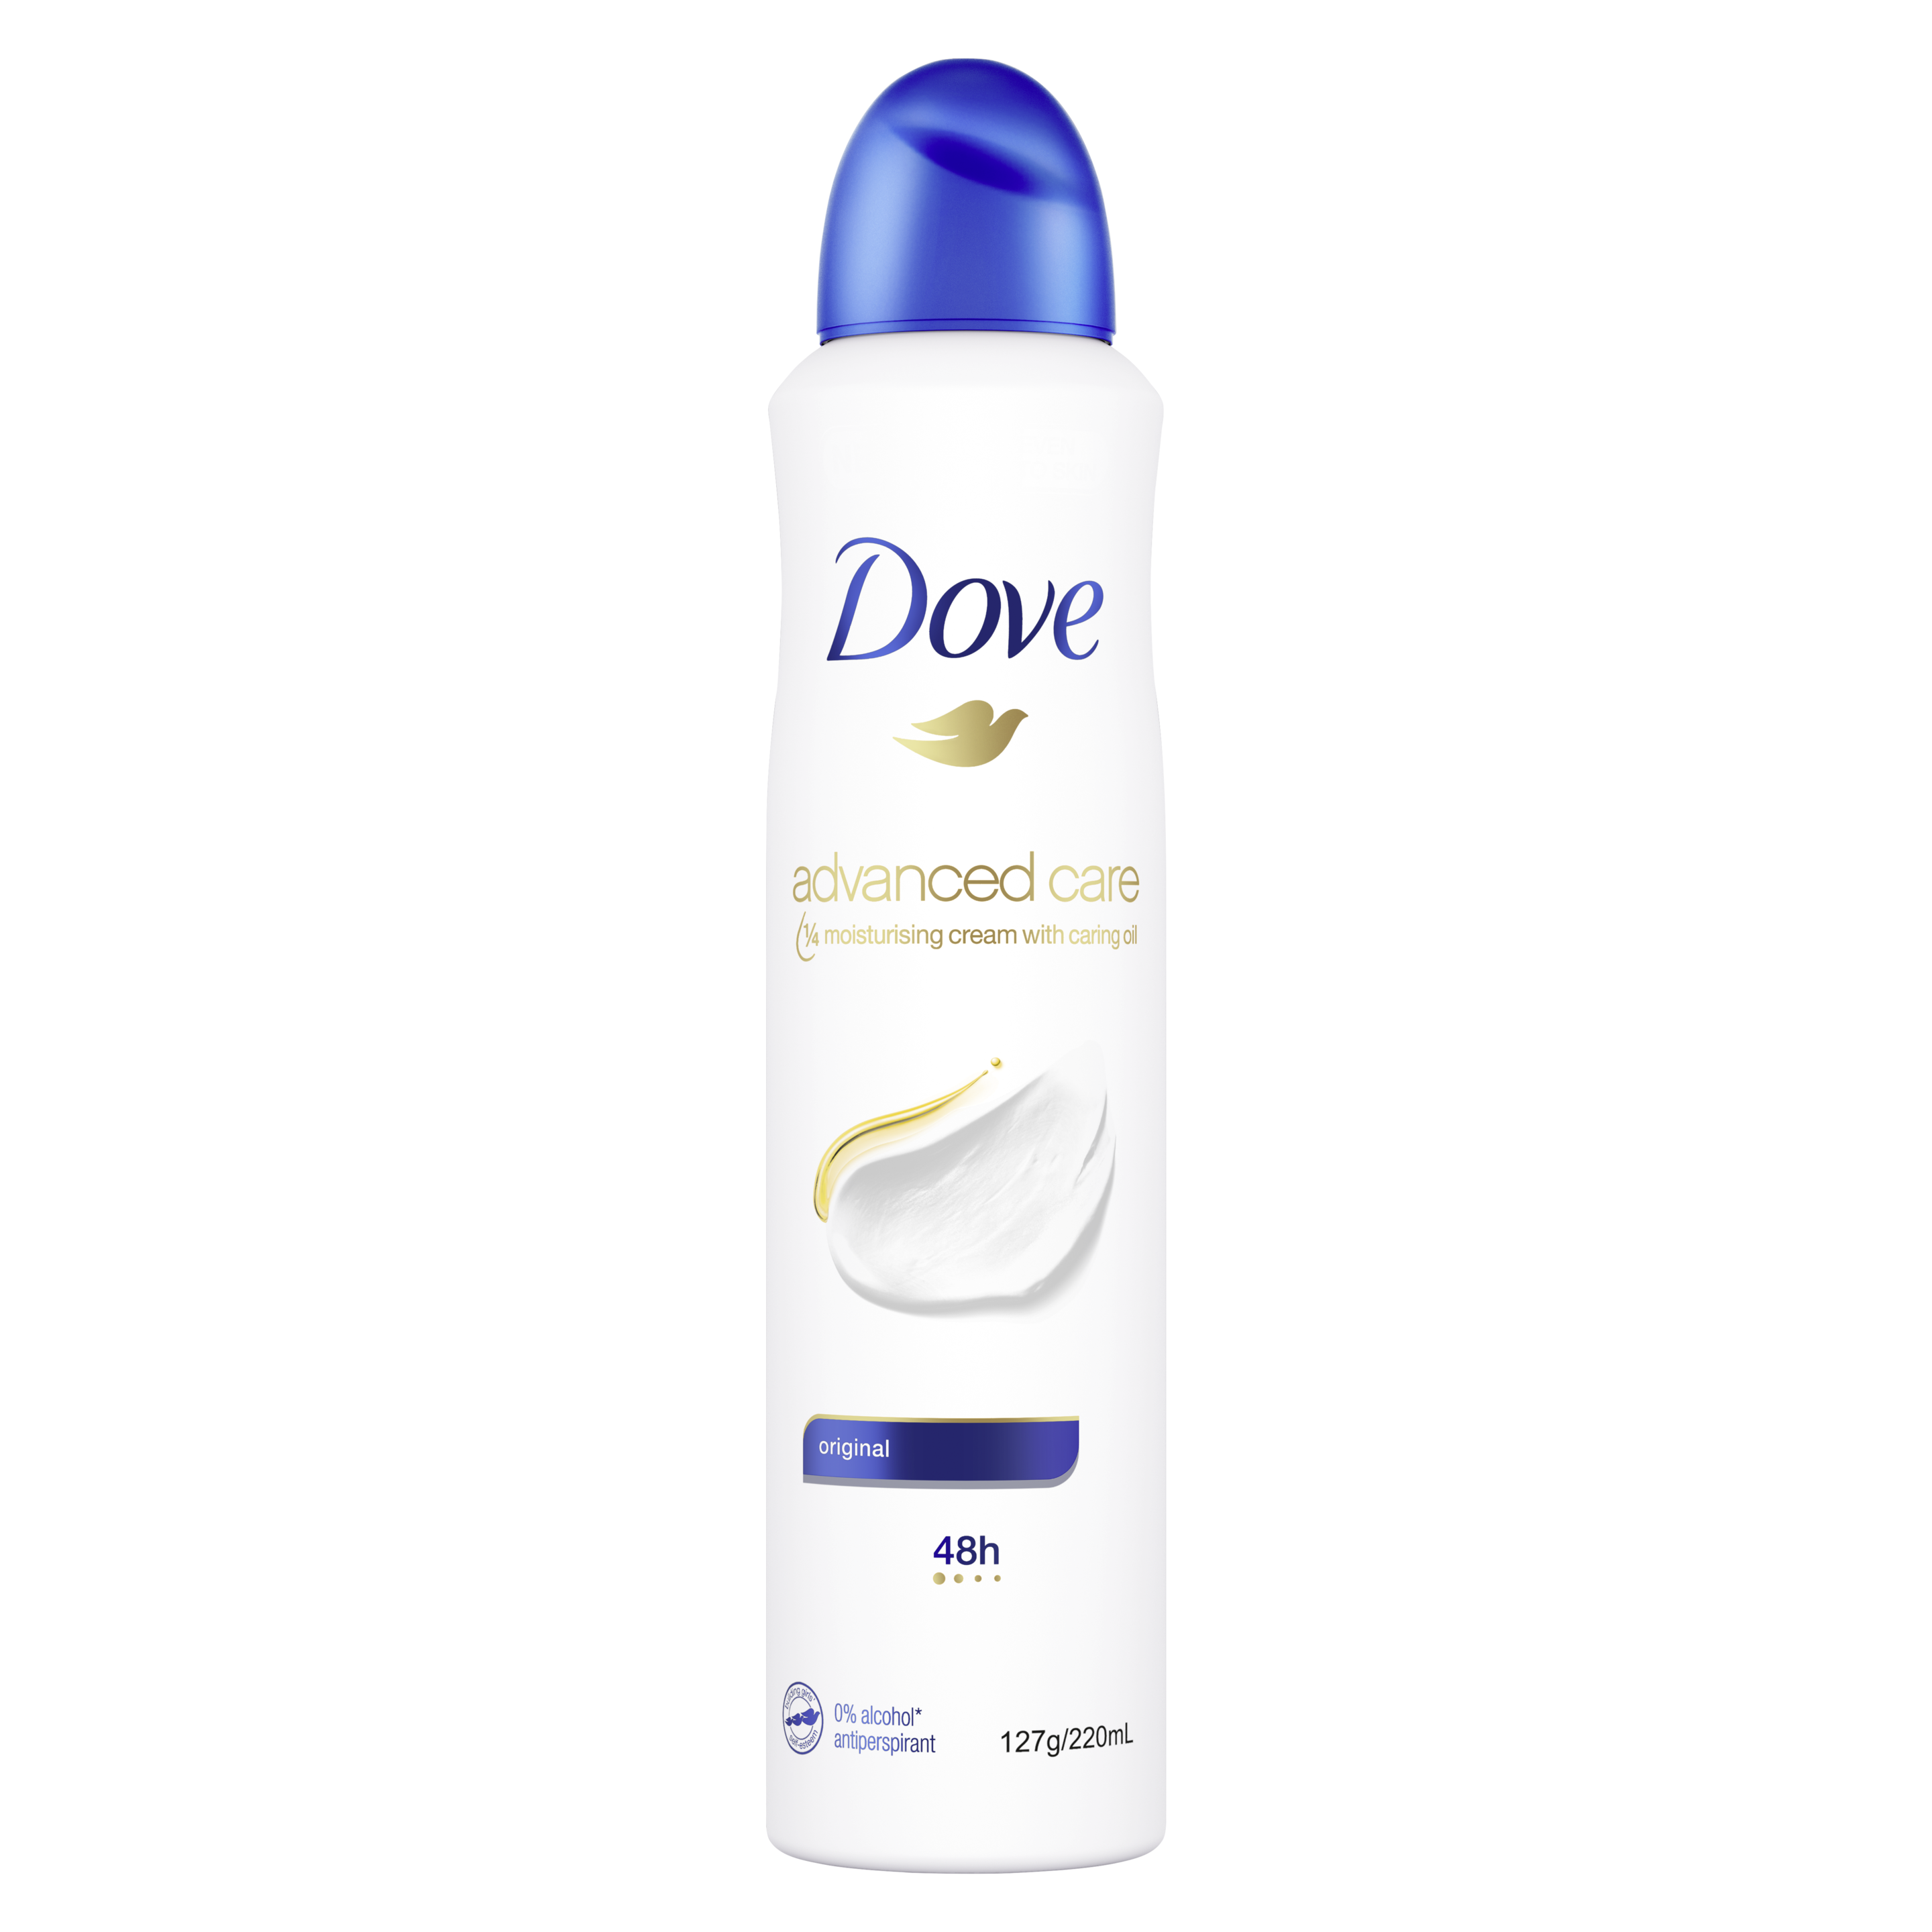 Dove Advanced Care Original Antiperspirant Deodorant Aerosol Text